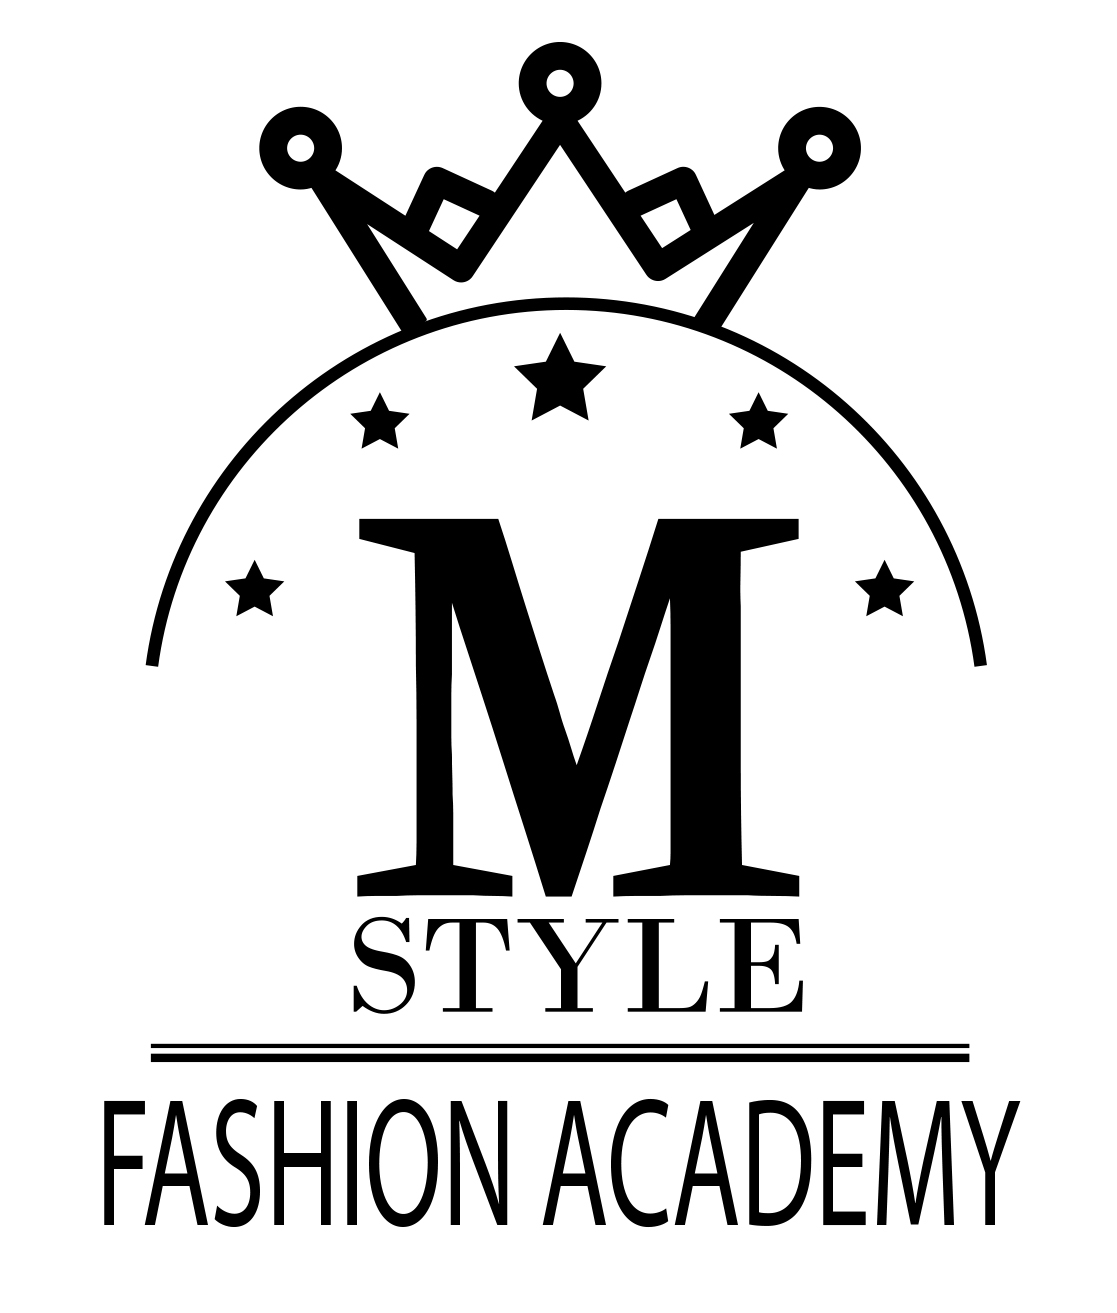 LOGO fashion academy jpg